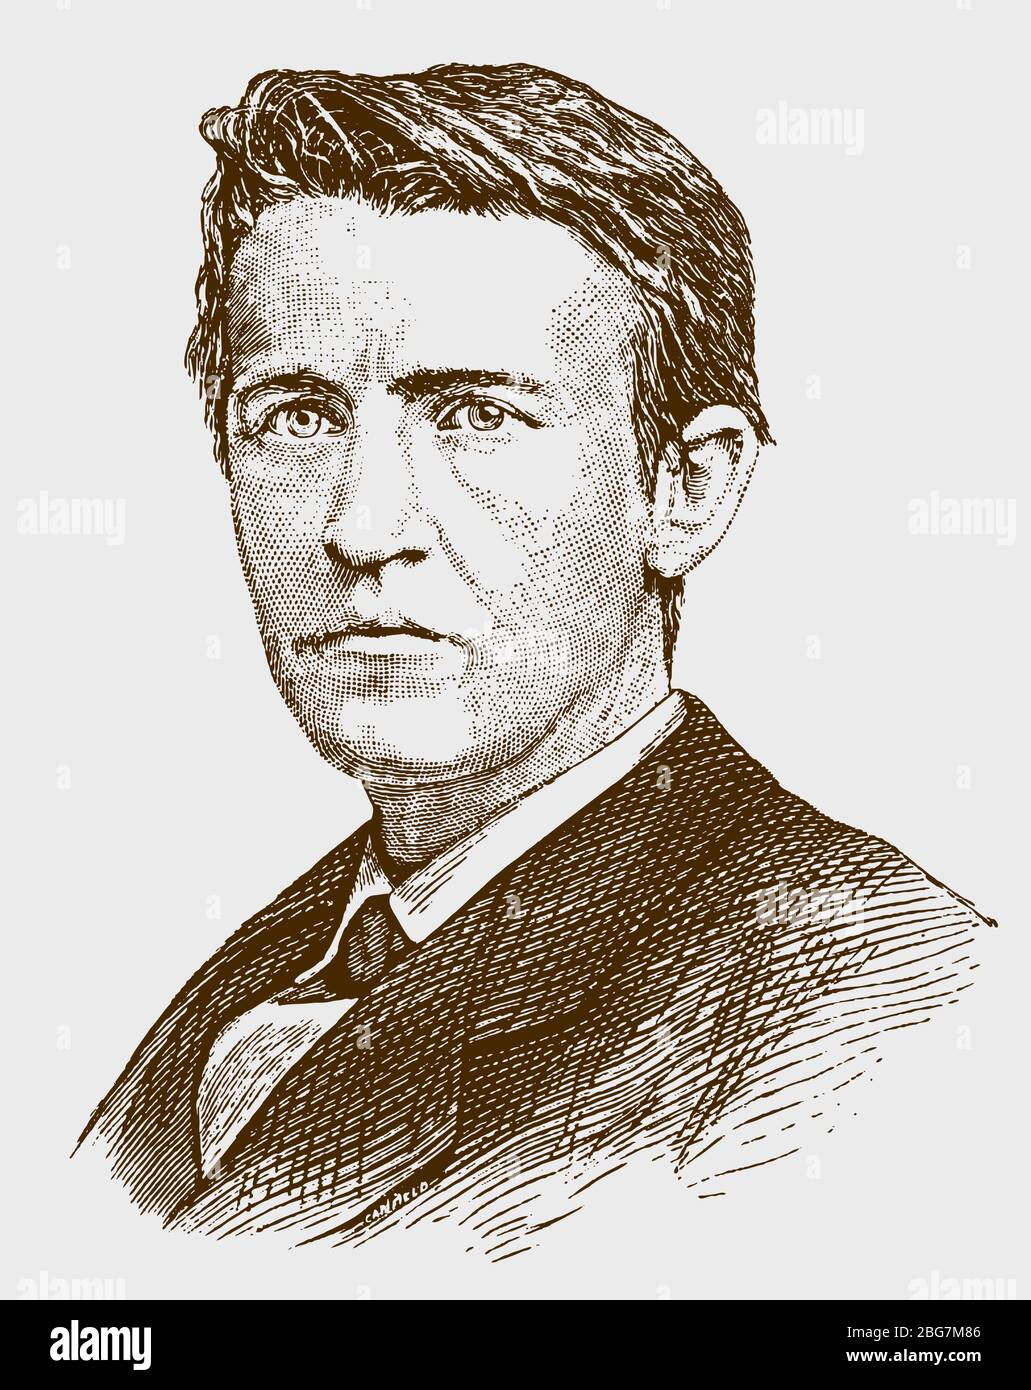 Portrait historique du jeune thomas alva edison, le célèbre inventeur américain. Lllustration après une gravure du XIXe siècle Illustration de Vecteur